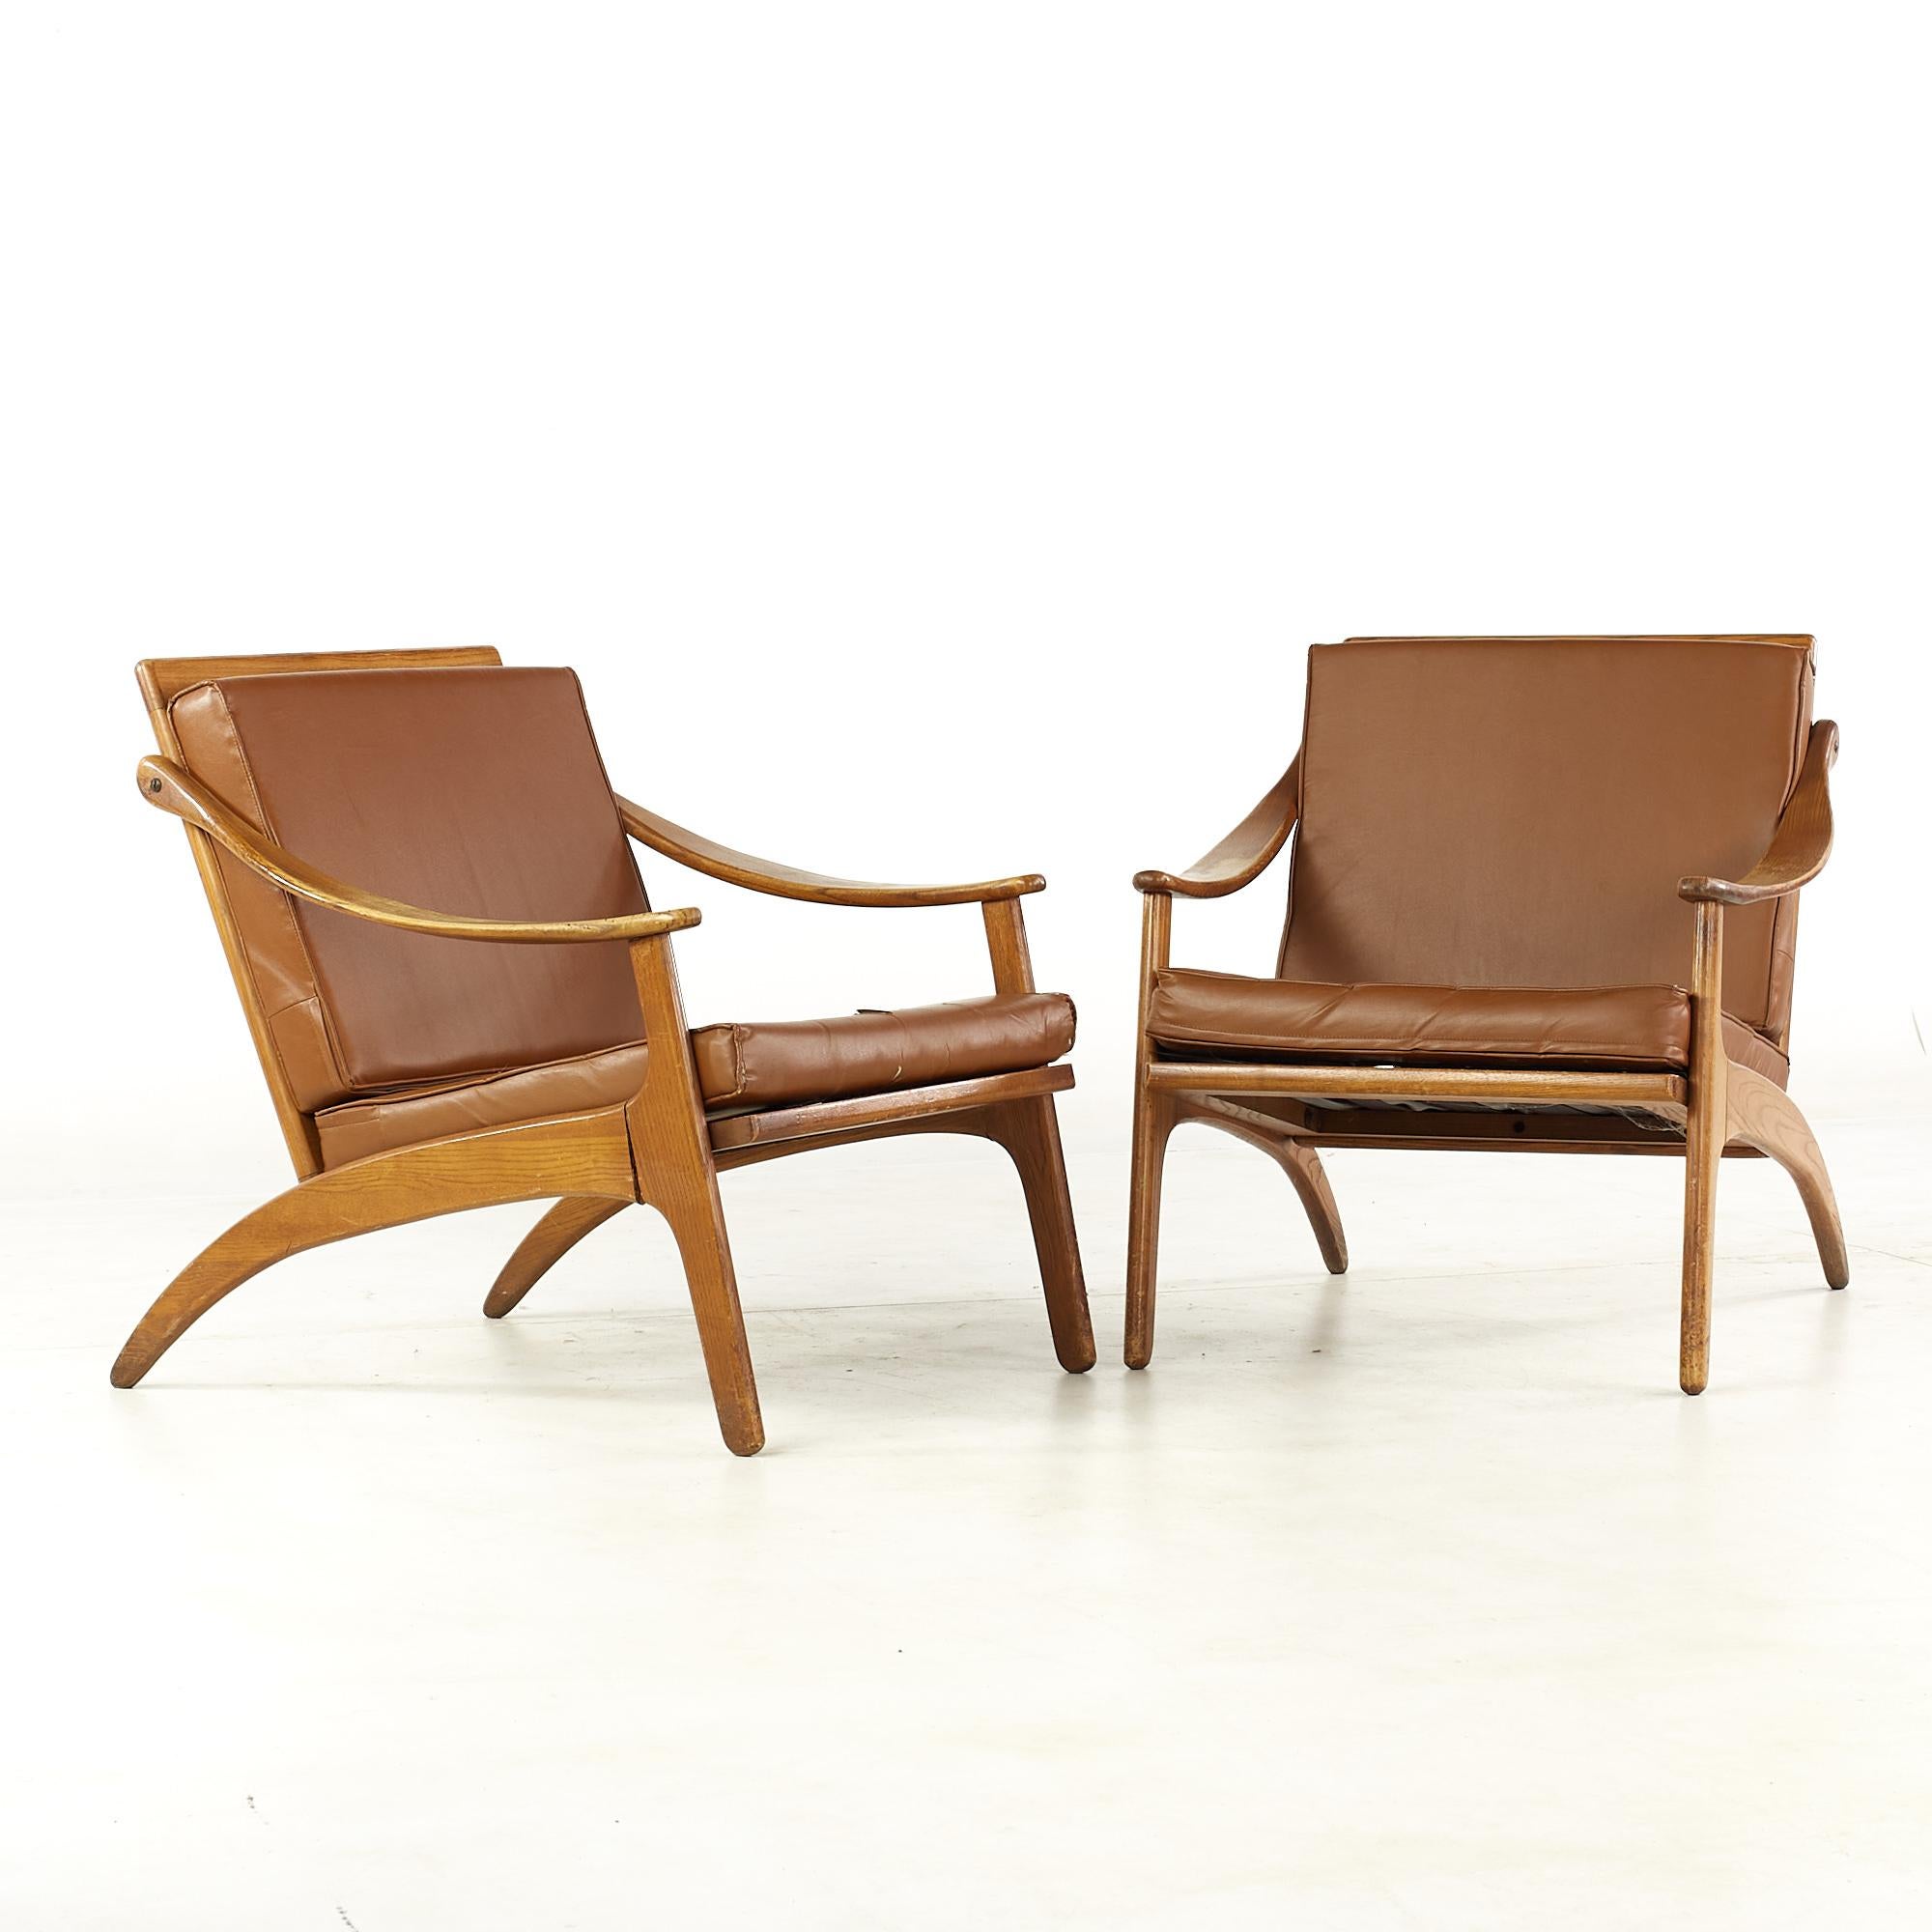 Arne Hovmand Olsen for P Mikkelsen chaises longues en teck du milieu du siècle - paire.

Chaque chaise mesure : 26 de large x 31 de profond x 28 de haut, avec une hauteur d'assise de 15,5 et une hauteur d'accoudoir/d'espacement de 19,25